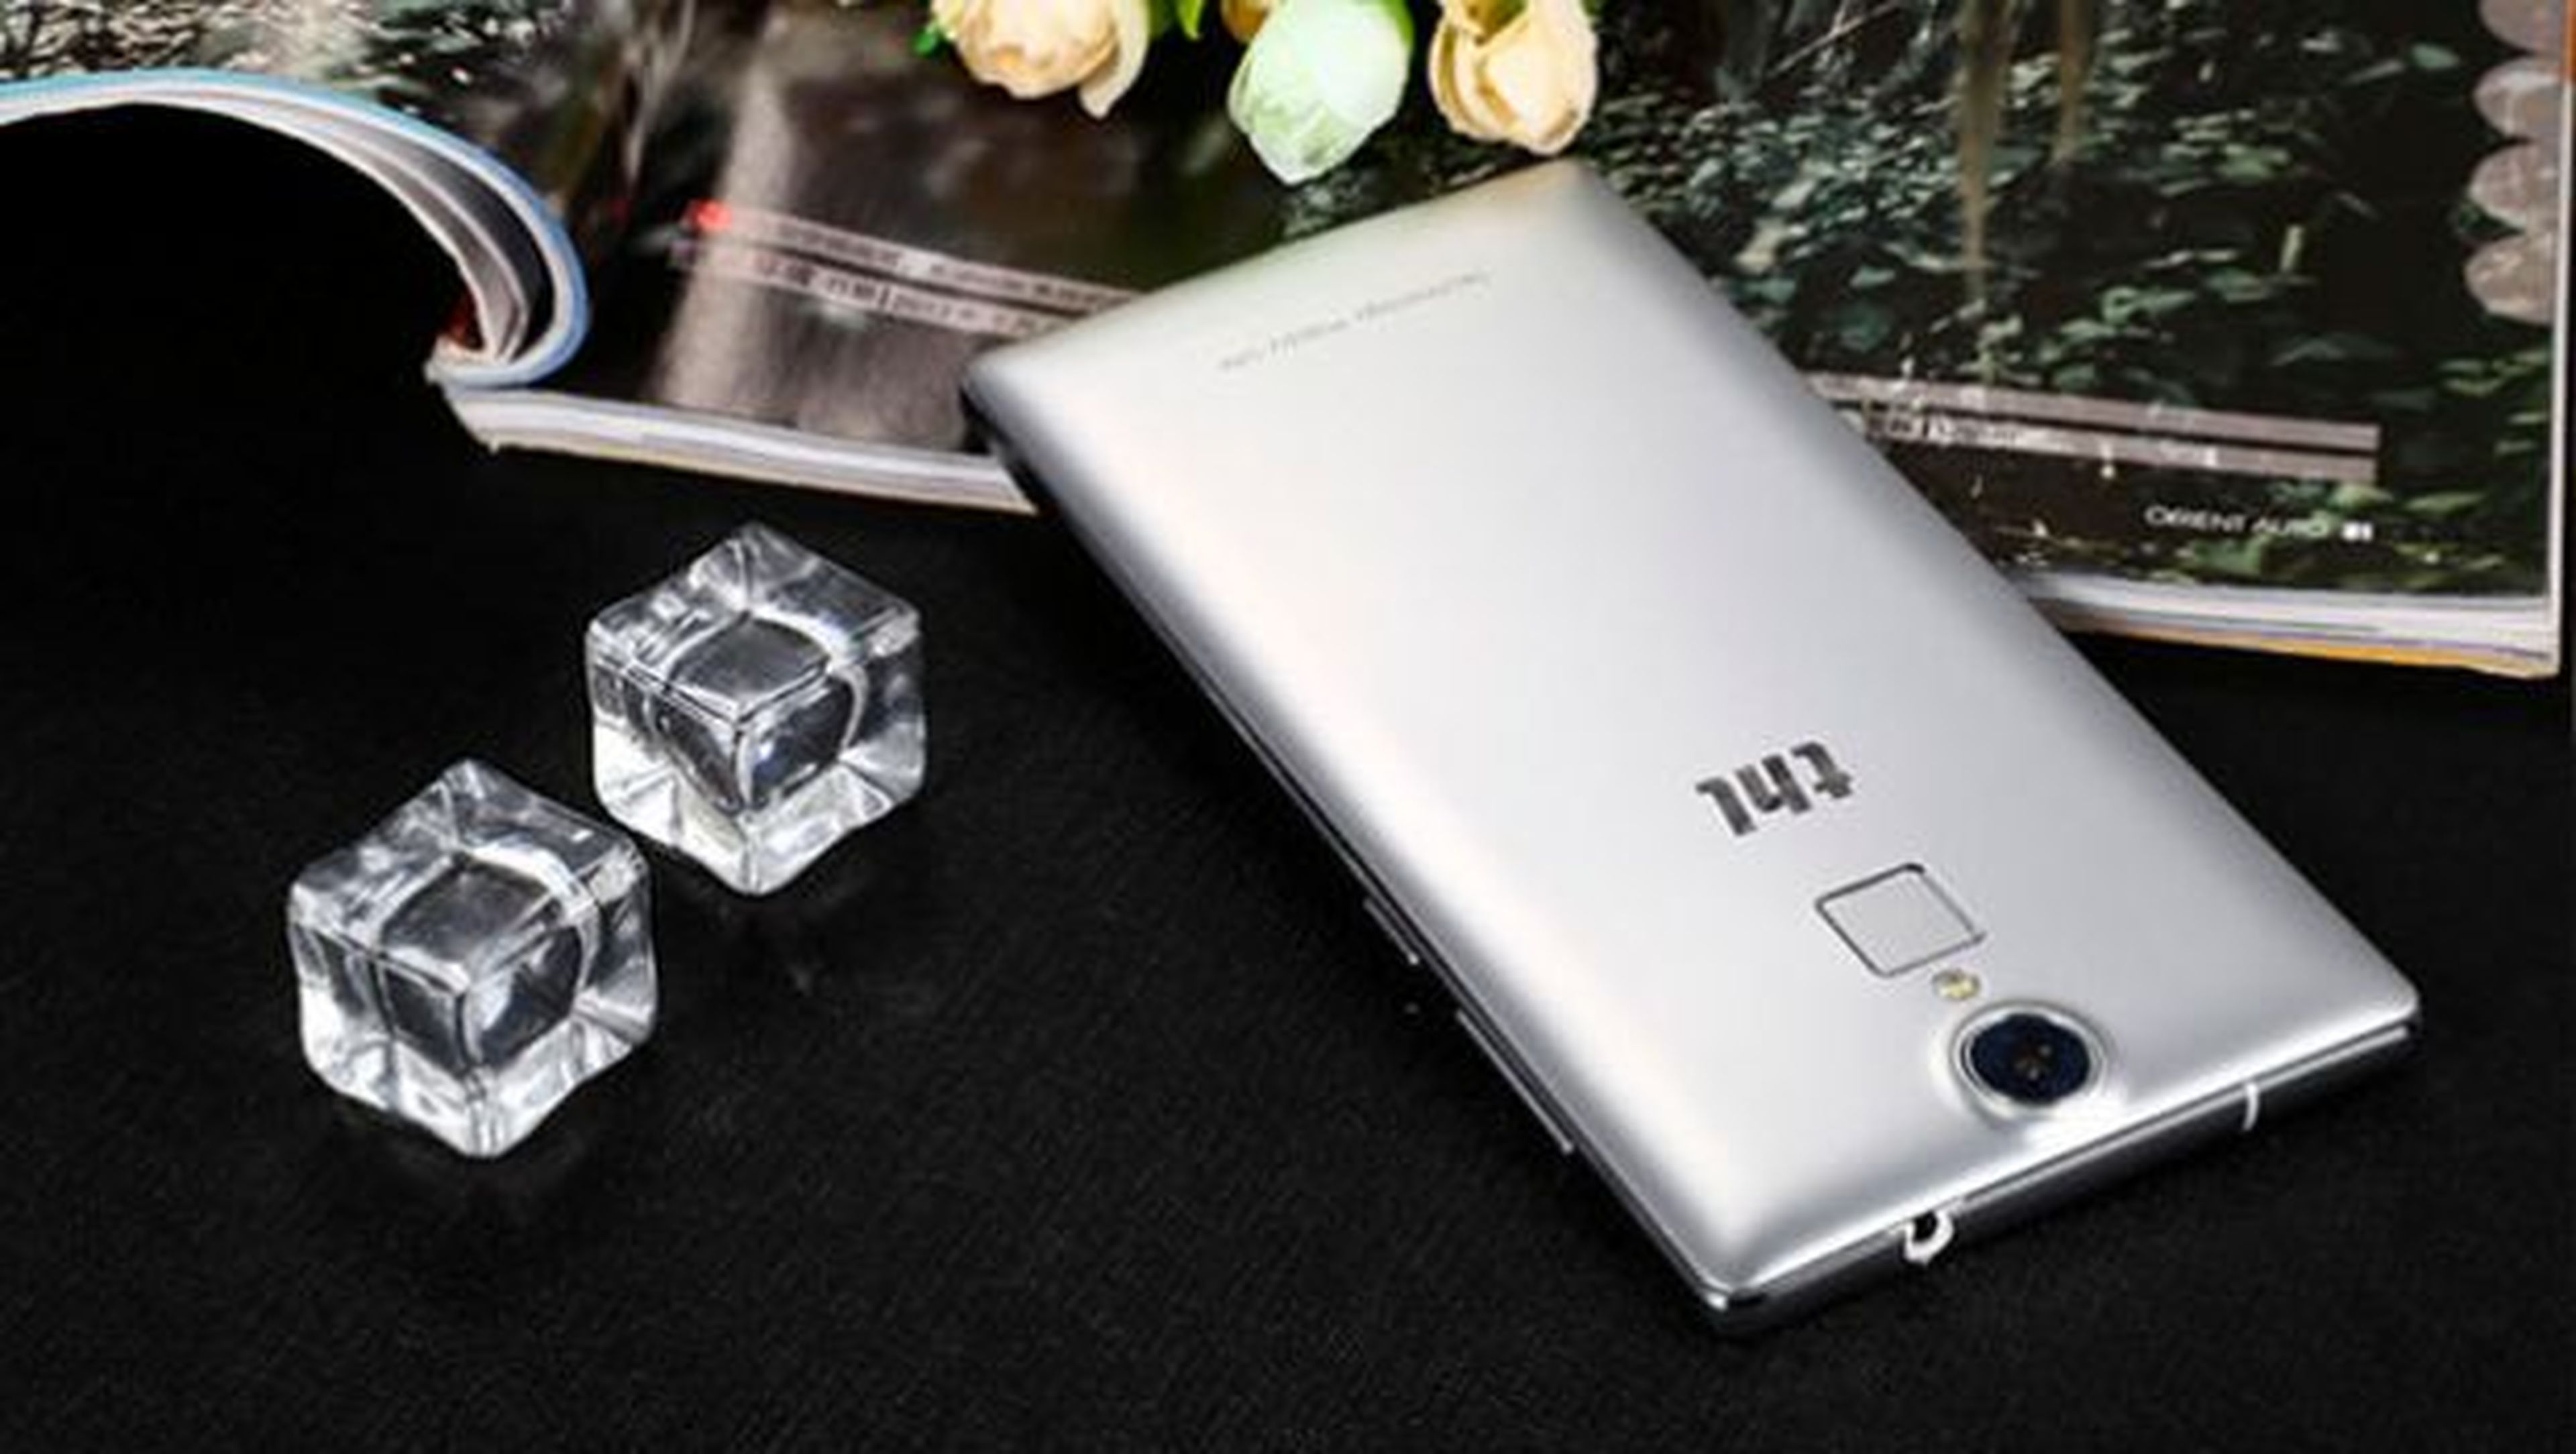 El THL T7 es un móvil sobrio que ofrece el acabado en plata como única opción, pero que en su parte trasera incluye un lector de huella dactilar.